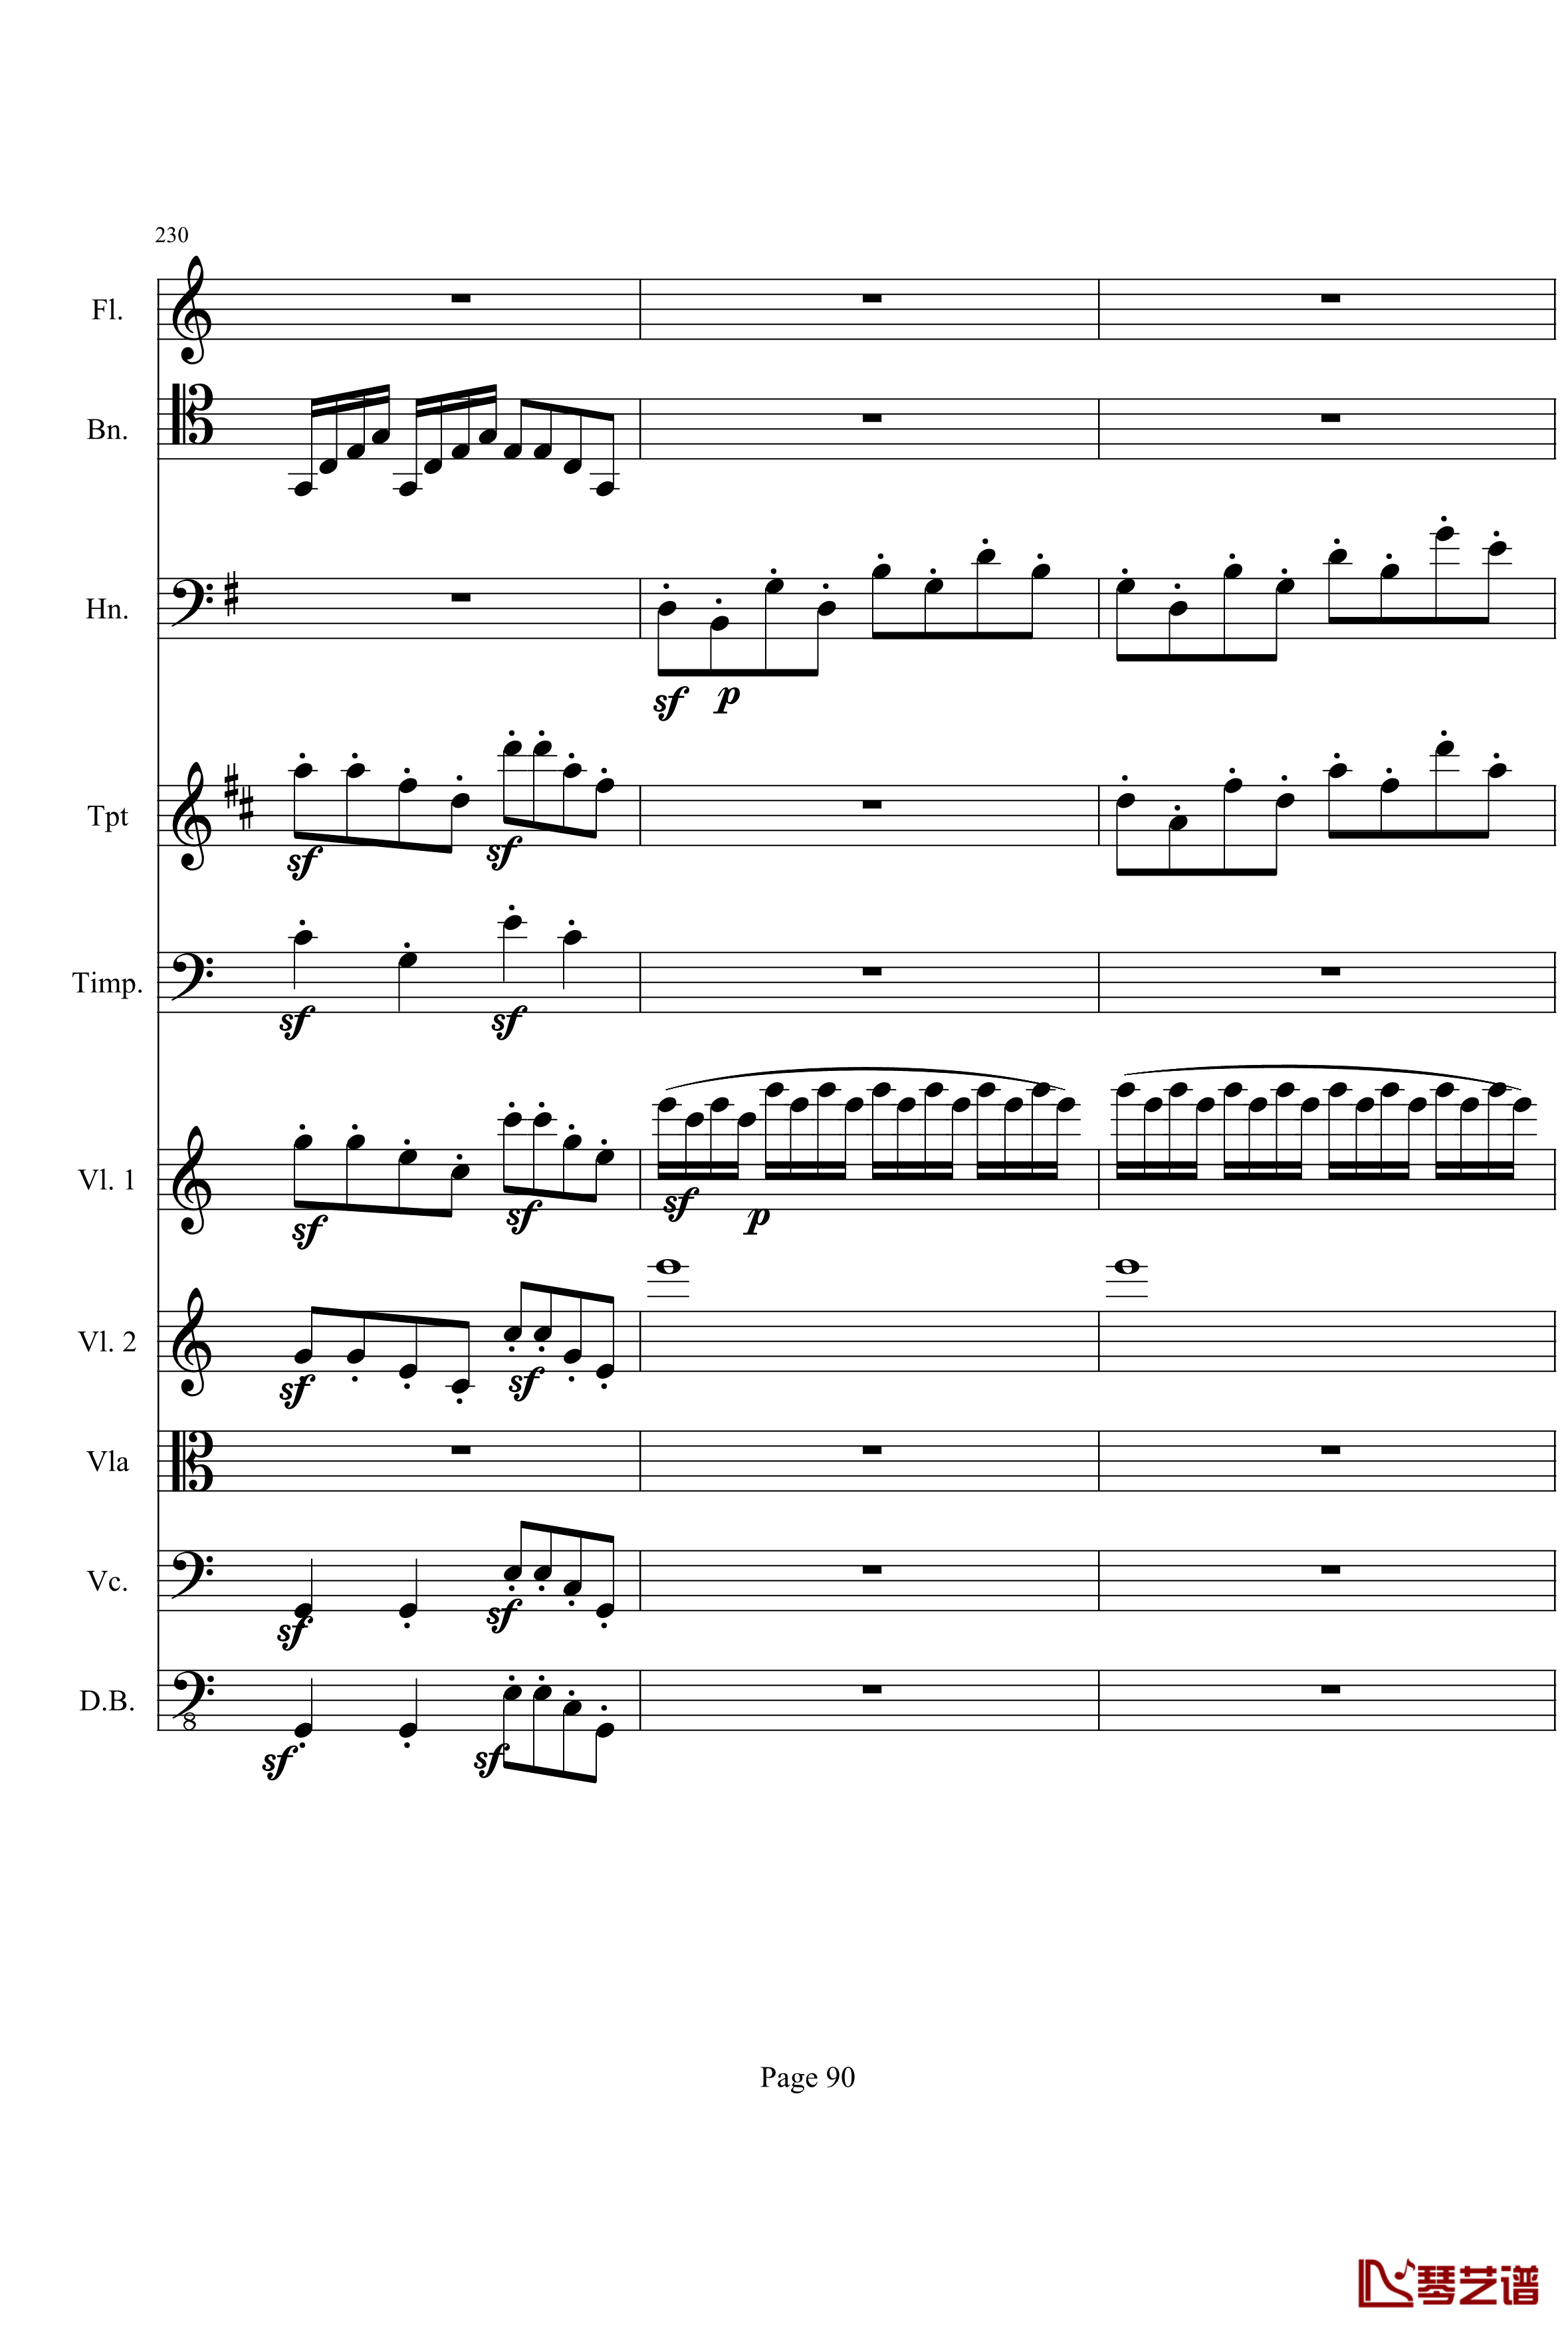 奏鸣曲之交响钢琴谱-第21-Ⅰ-贝多芬-beethoven90